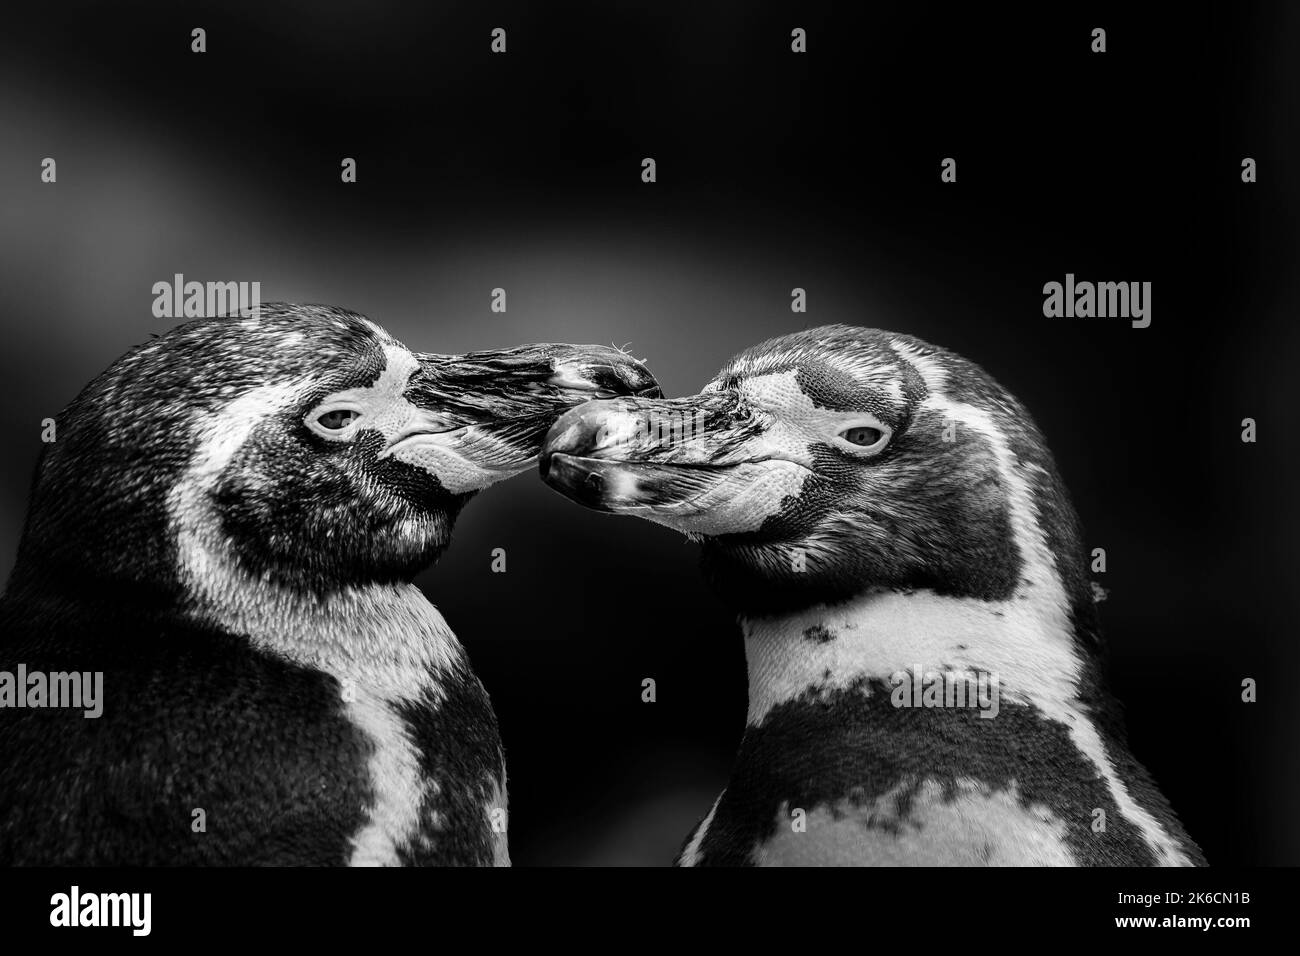 Schwarz-weiß Nahaufnahme von zwei Humboldt-Pinguinen (Spheniscus humboldti), die sich gegenseitig lieben, zusammen mit dem sich berührenden Schnabel. Stockfoto